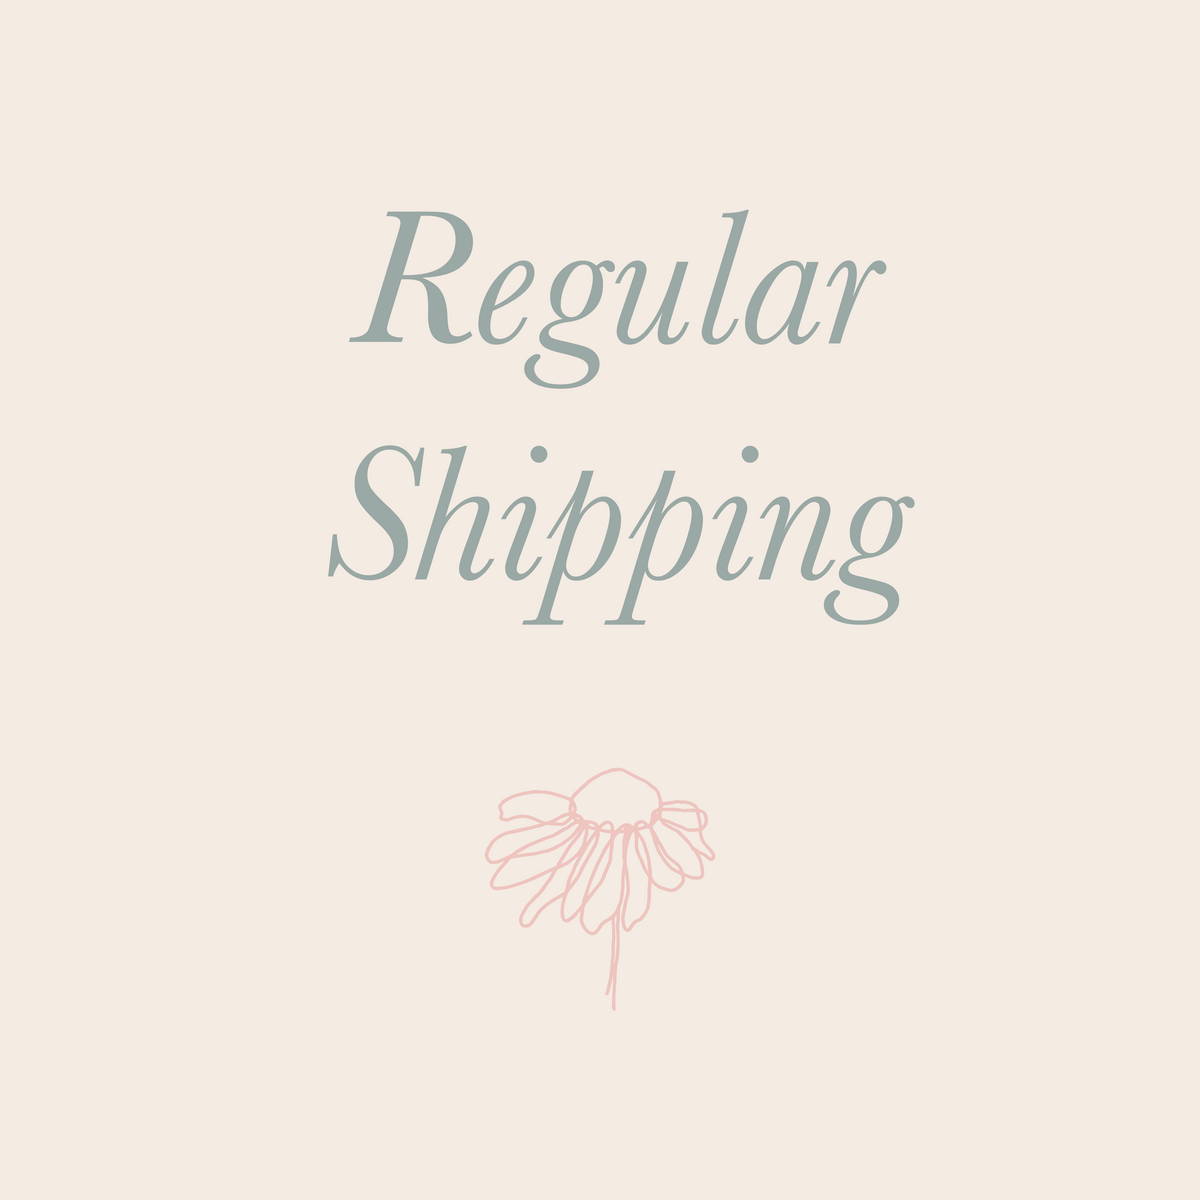 Regular Shipping